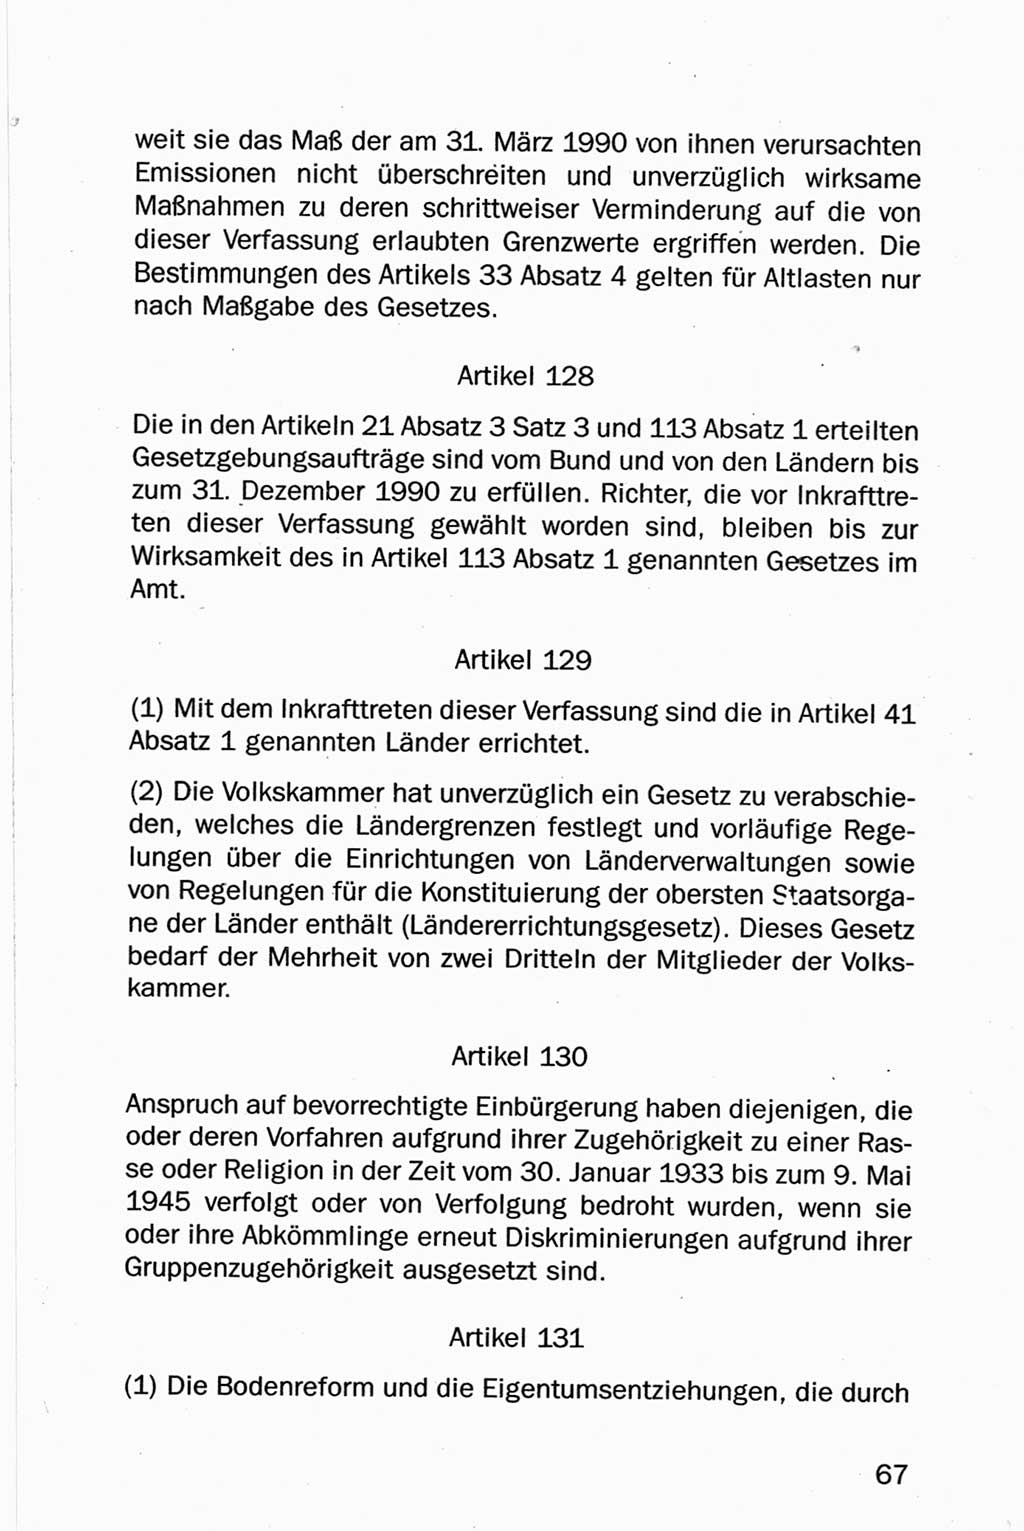 Entwurf Verfassung der Deutschen Demokratischen Republik (DDR), Arbeitsgruppe "Neue Verfassung der DDR" des Runden Tisches, Berlin 1990, Seite 67 (Entw. Verf. DDR 1990, S. 67)